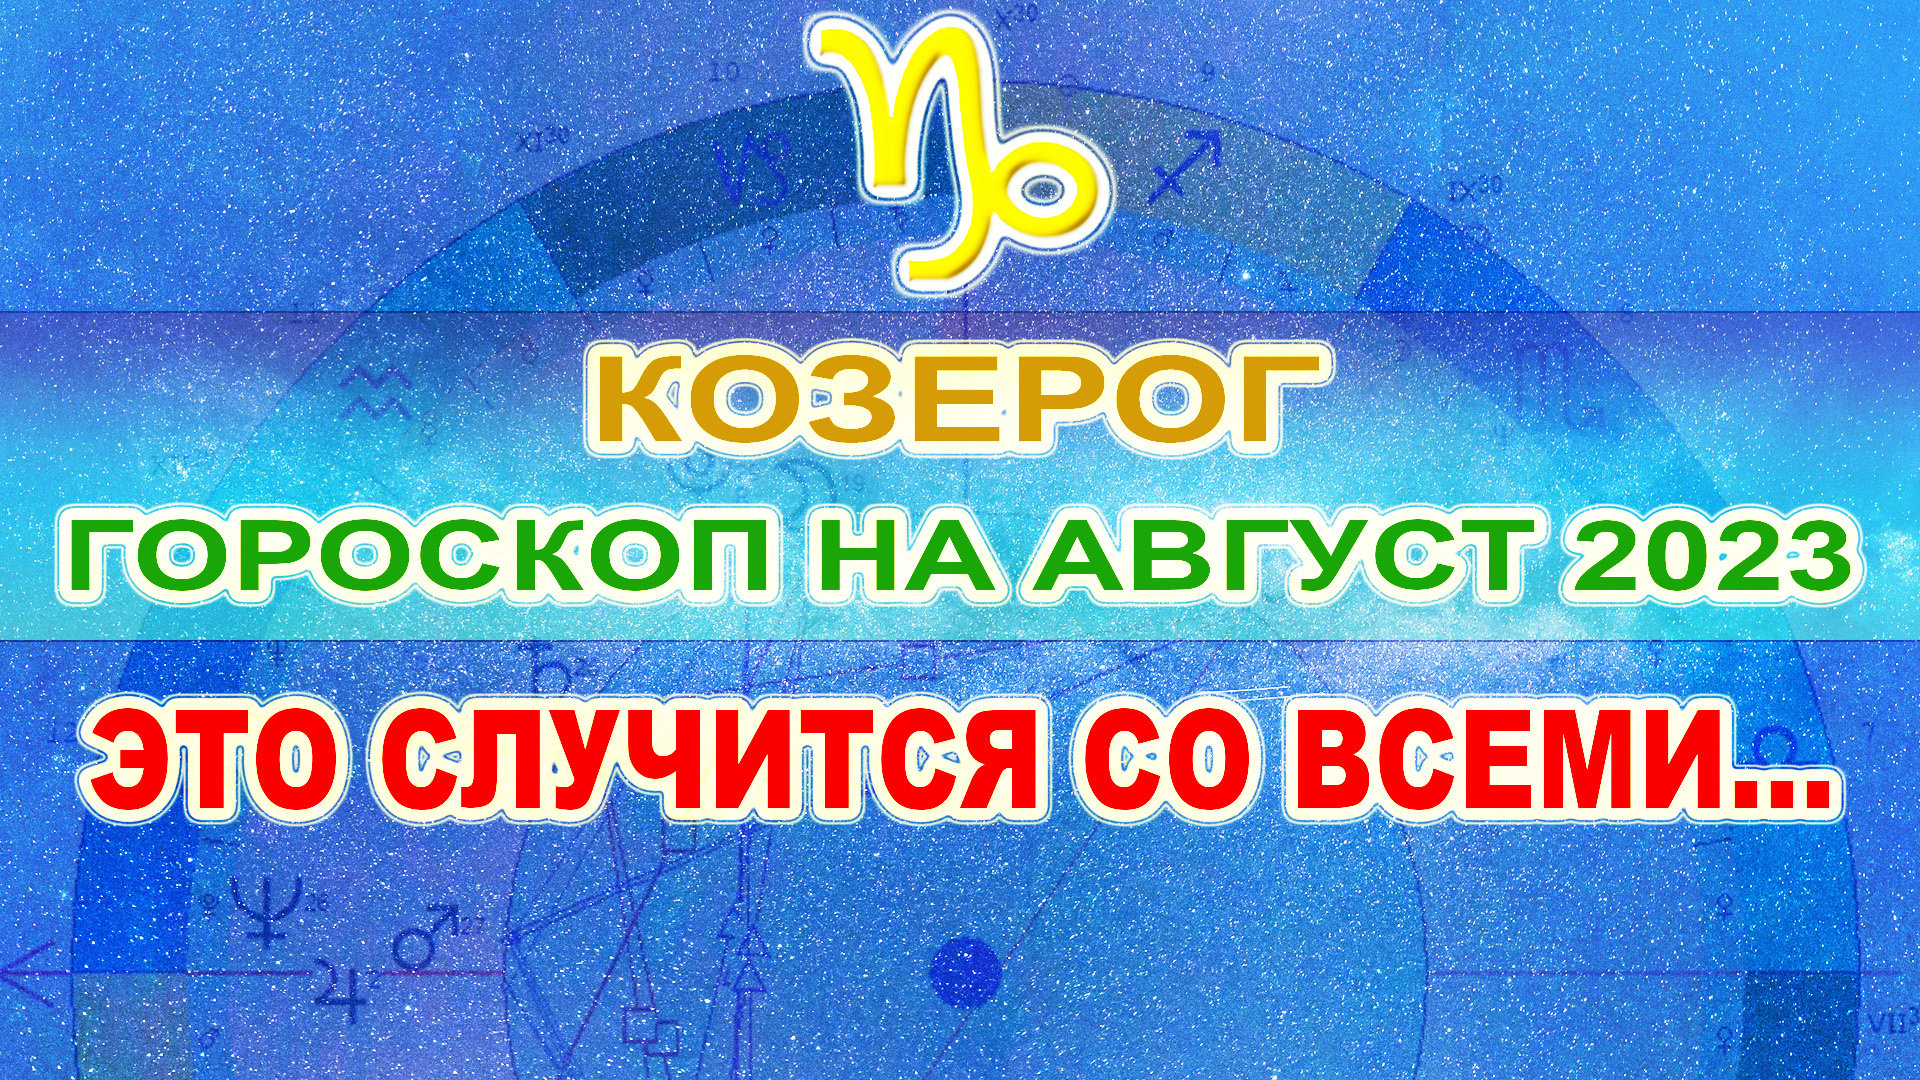 ♑ Гороскоп для Козерога на август 2023 ❗ Ретроградный Меркурий.